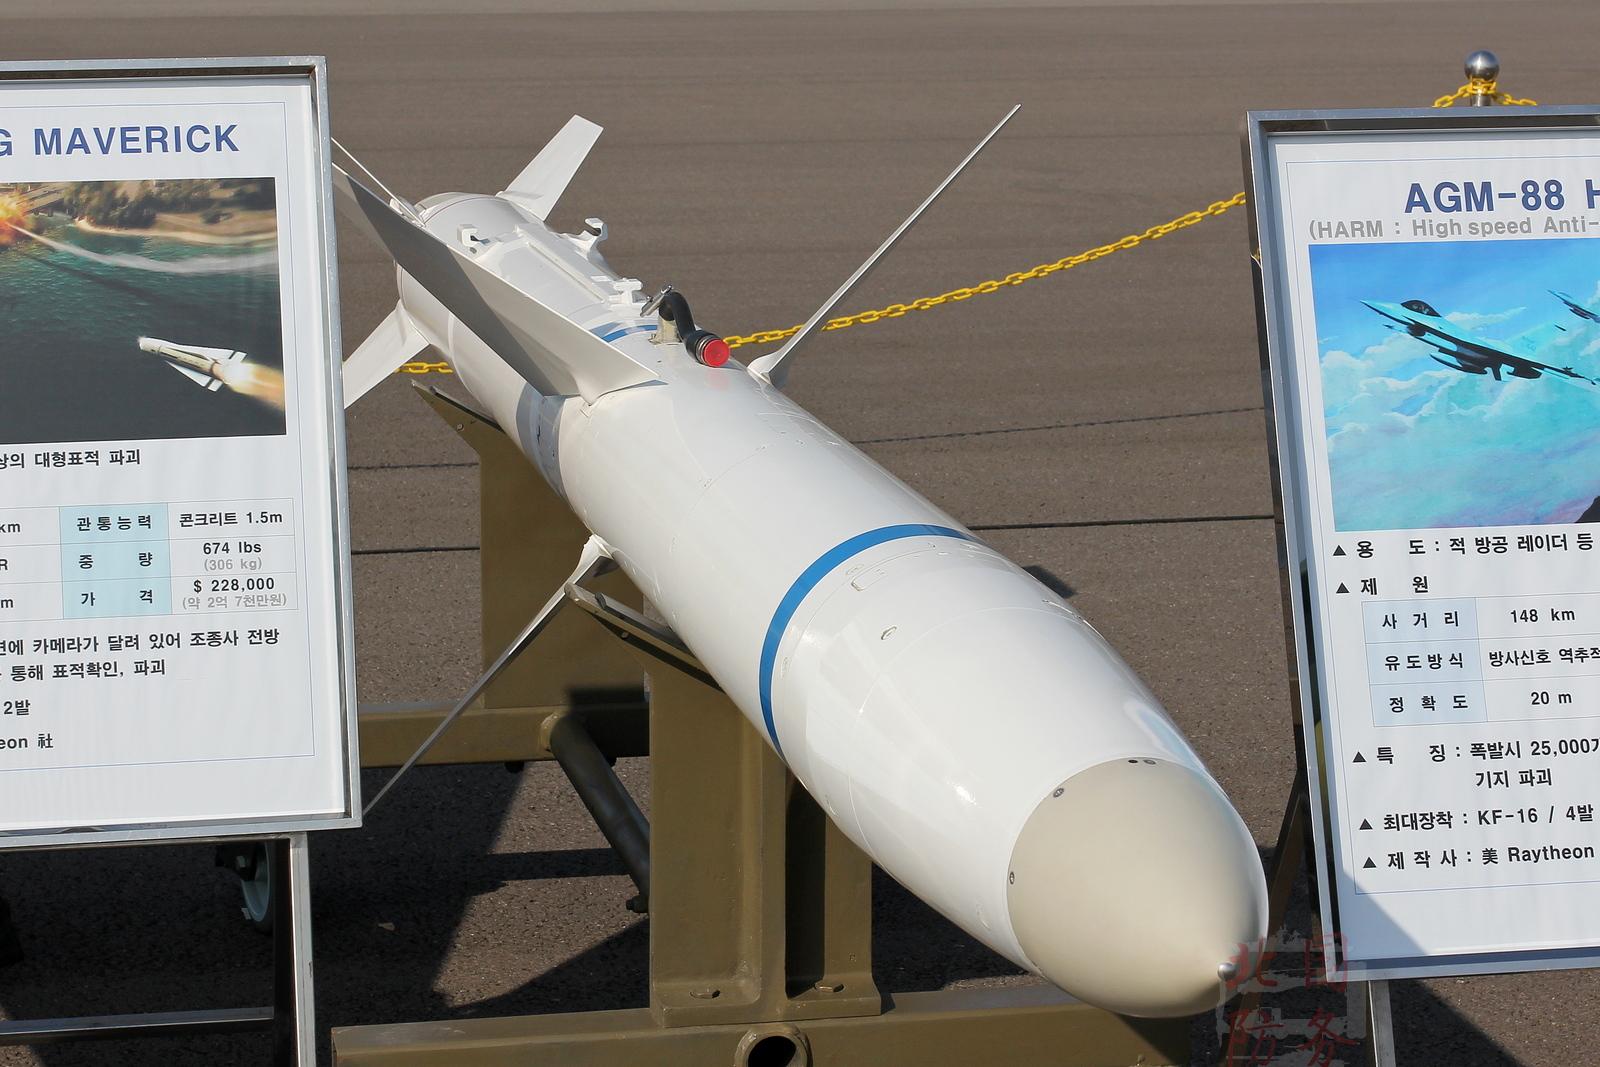 agm-88"哈姆"高速反辐射导弹,该导弹实战经验丰富,堪称此类导弹的"代